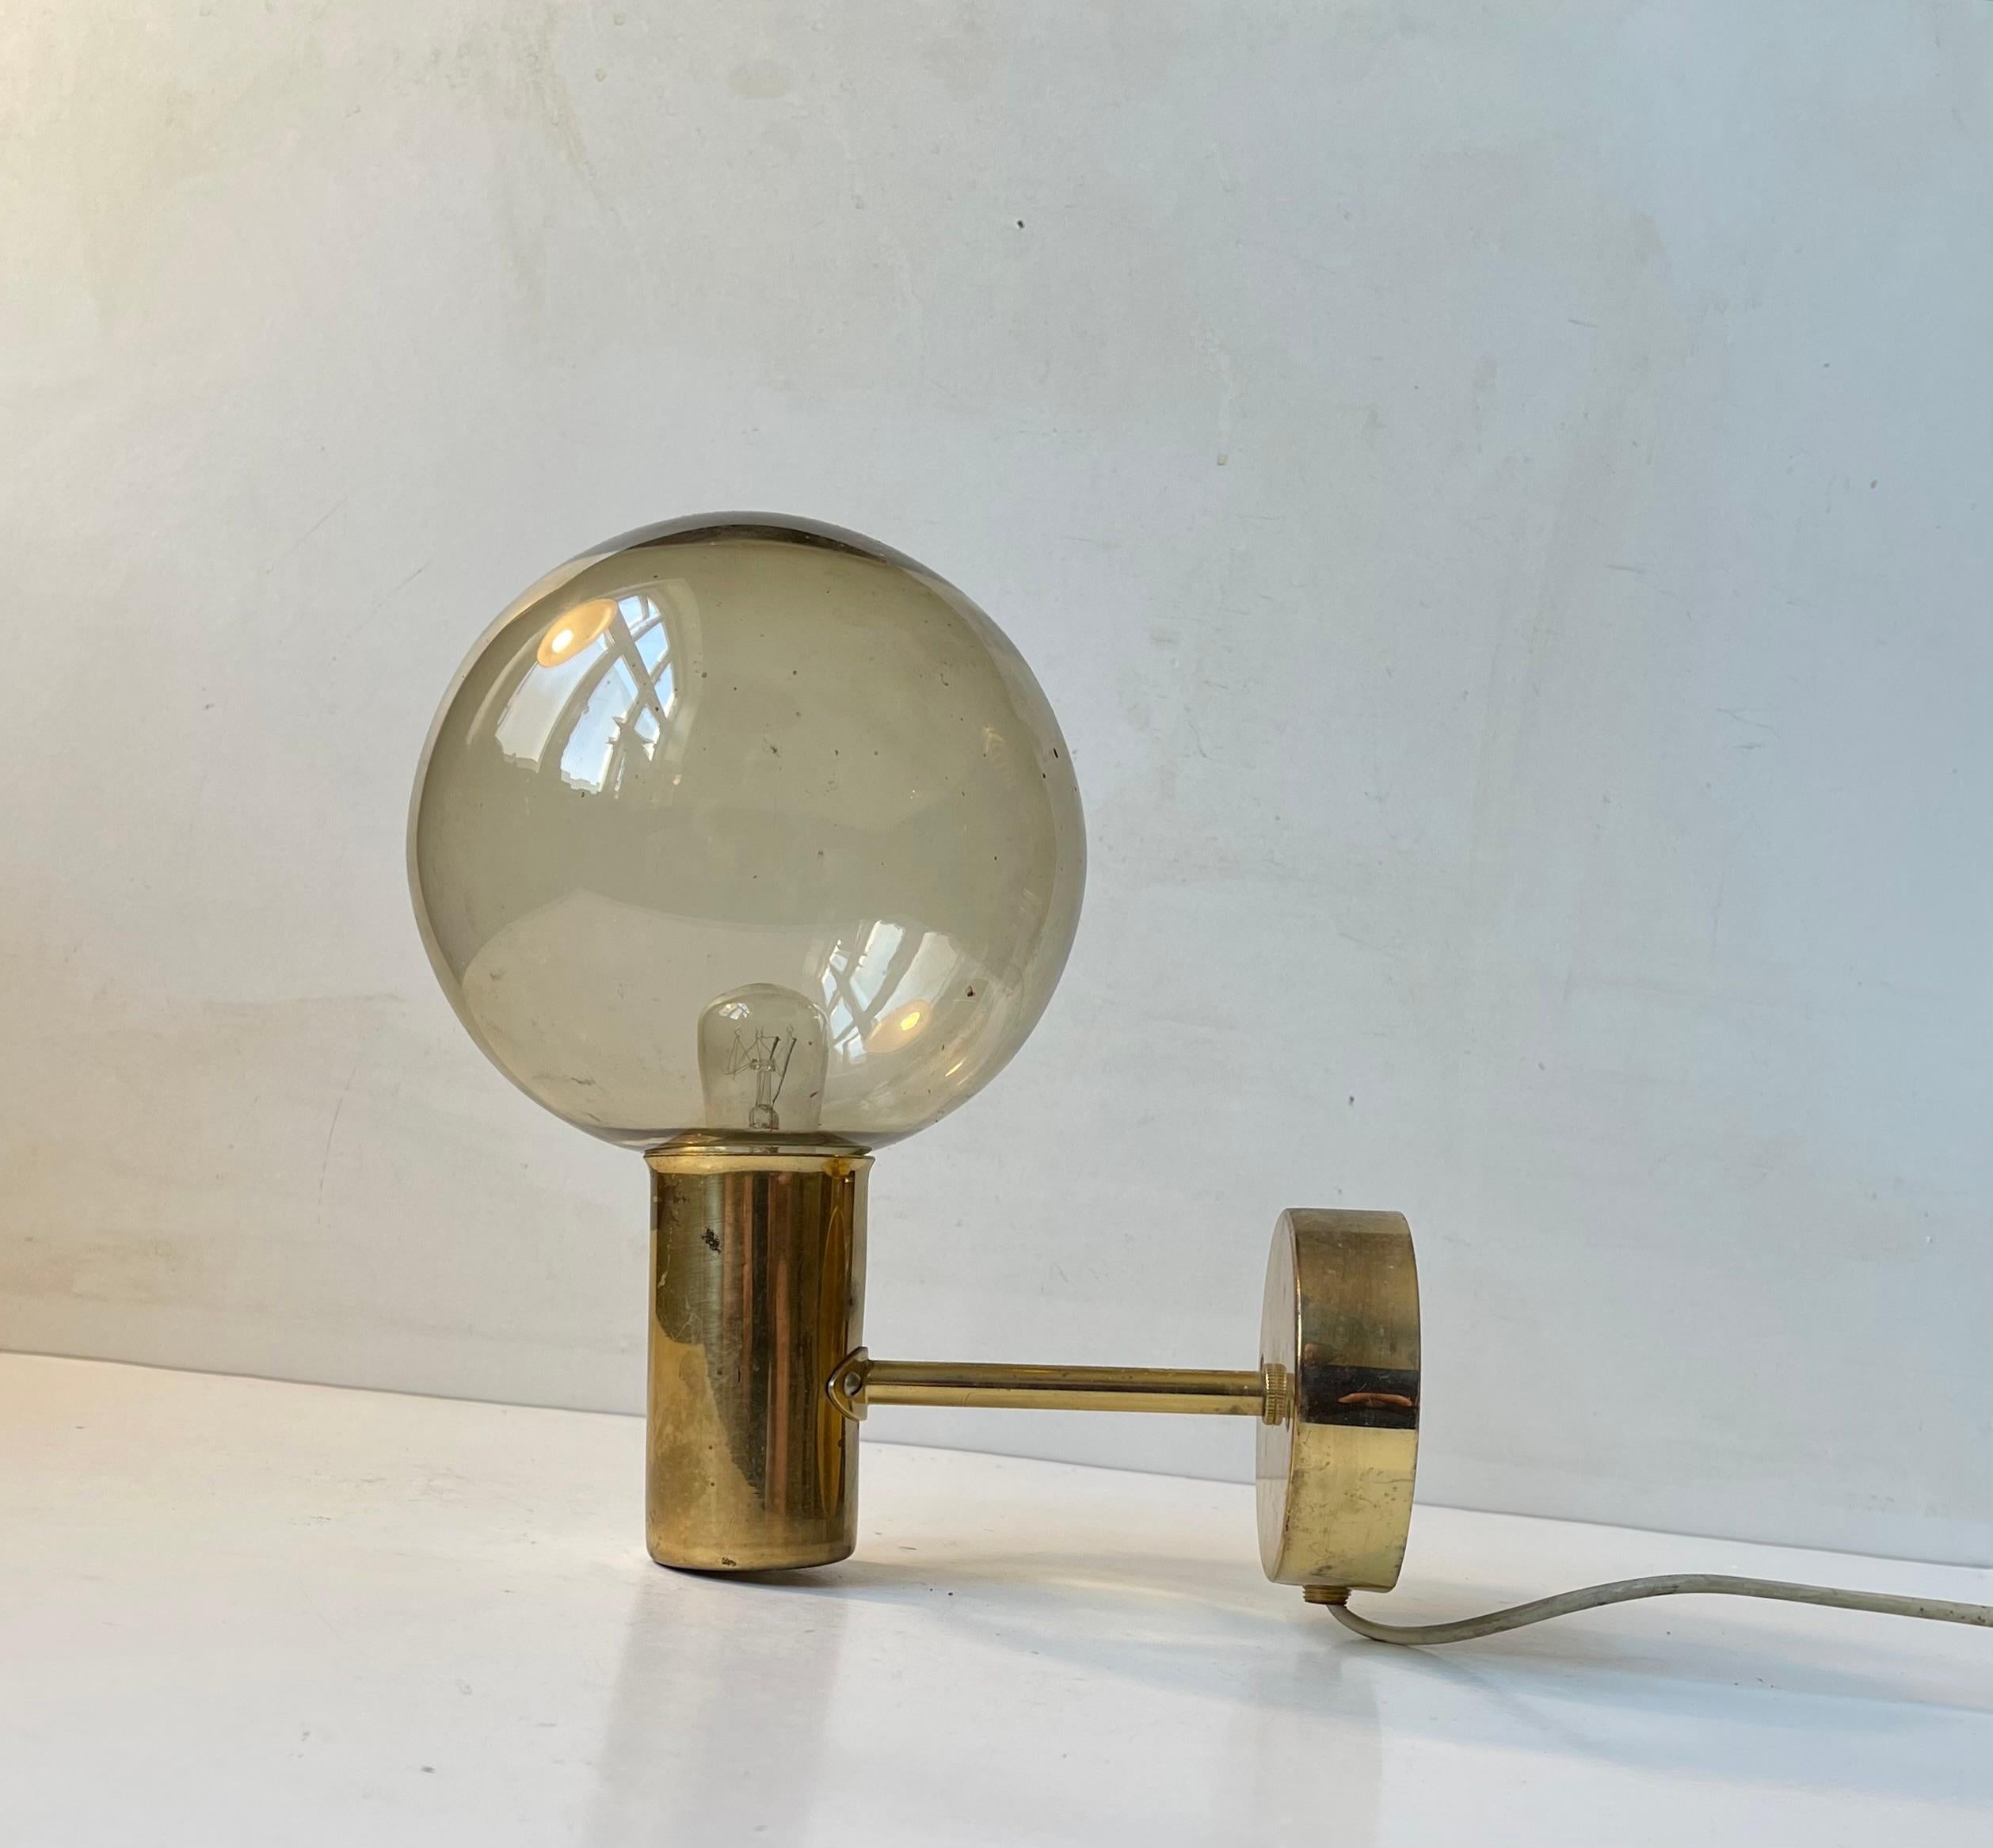 Applique à abat-jour en verre sphérique conçue par Hans Agnes Jakobsson et fabriquée par Markaryd AB en Suède dans les années 1960. Le modèle s'appelle V149 ou Soap Bubble. Dimensions : 23x23x15 cm.

Pour les États-Unis. Il est livré avec une fiche